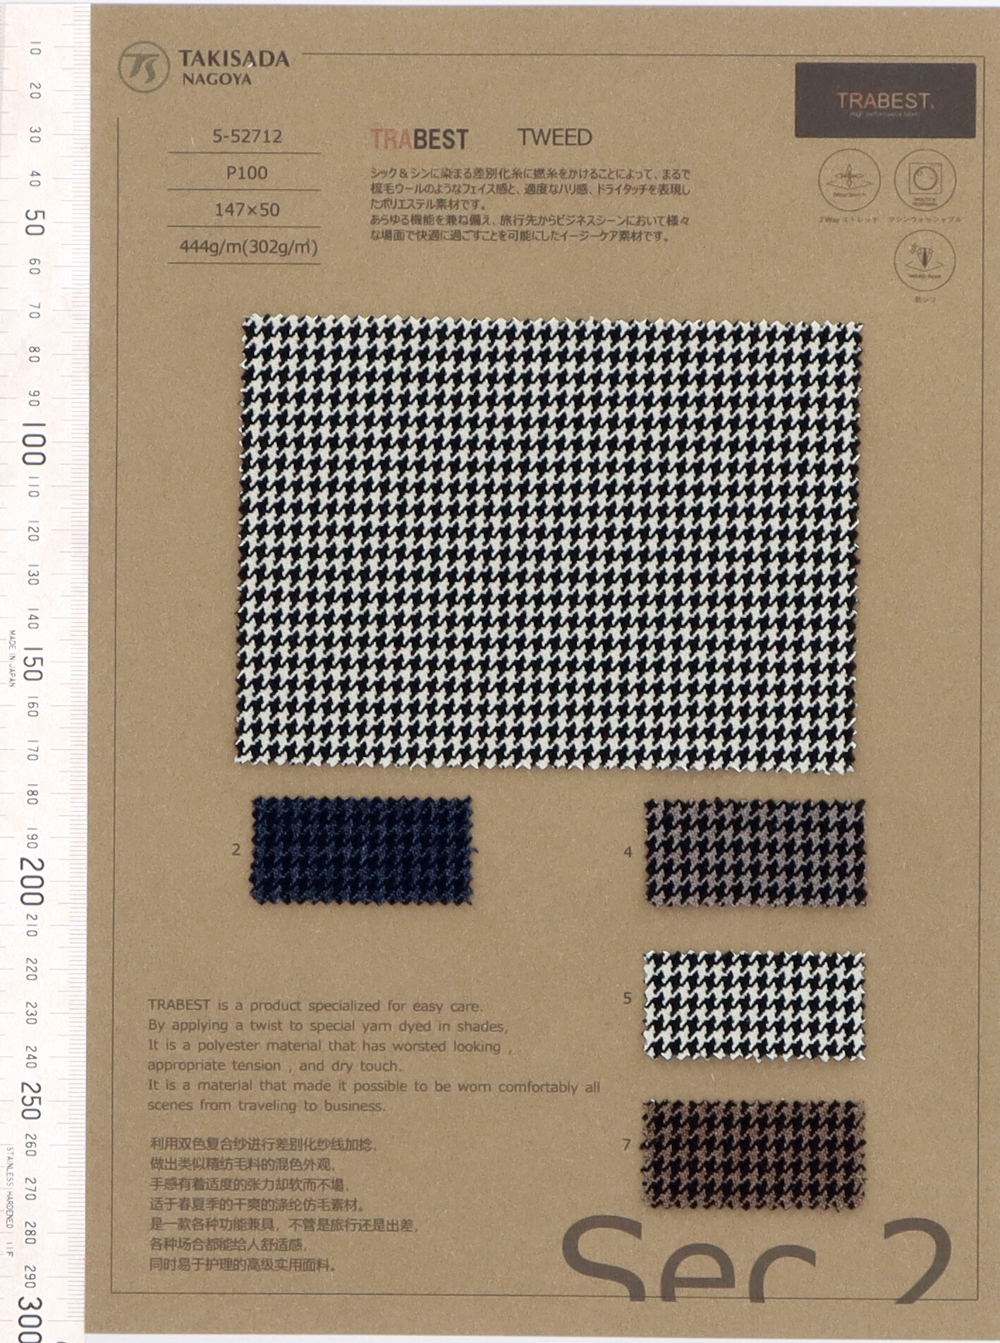 5-52712 TRABEST TWEED Soft Touch Melange Houndstooth[Têxtil / Tecido] Takisada Nagoya